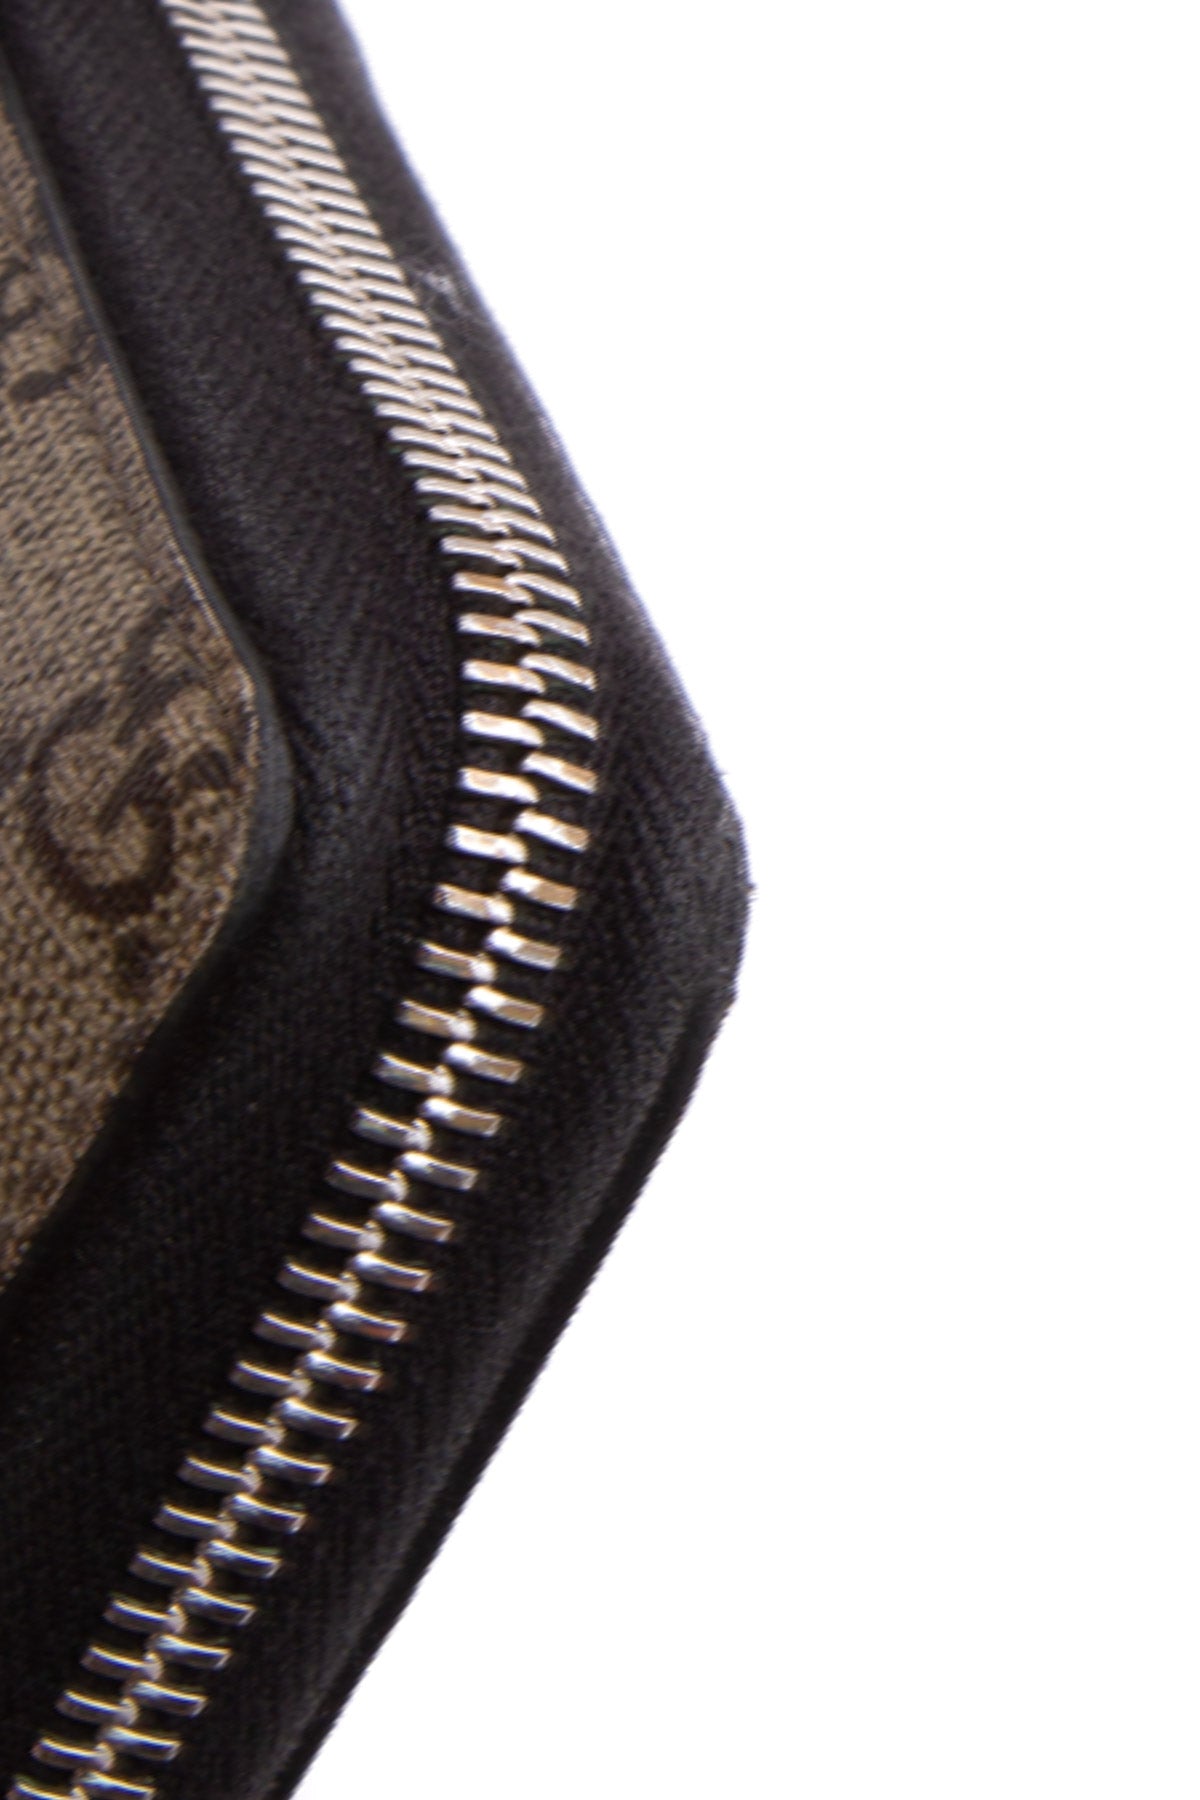 Authentic Louis Vuitton Black Supreme Leather Long Clutch Wallet LV Zip  Fold